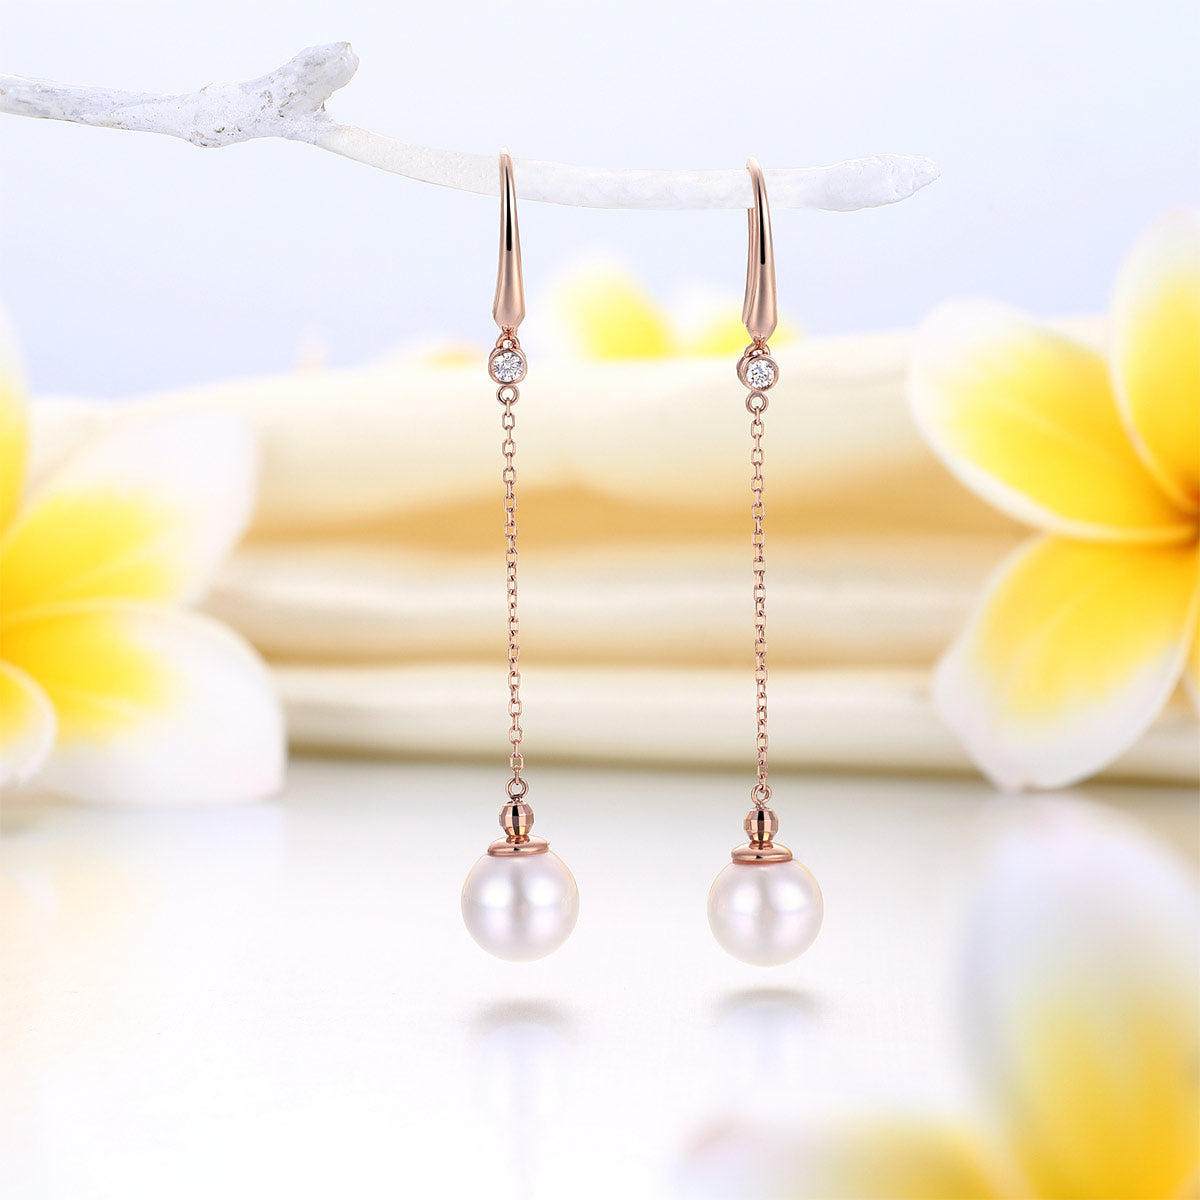 18K玫瑰金 鑽石日本Akoya珍珠耳環 (7-7.5mm) Pearl Earrings 精品珠寶